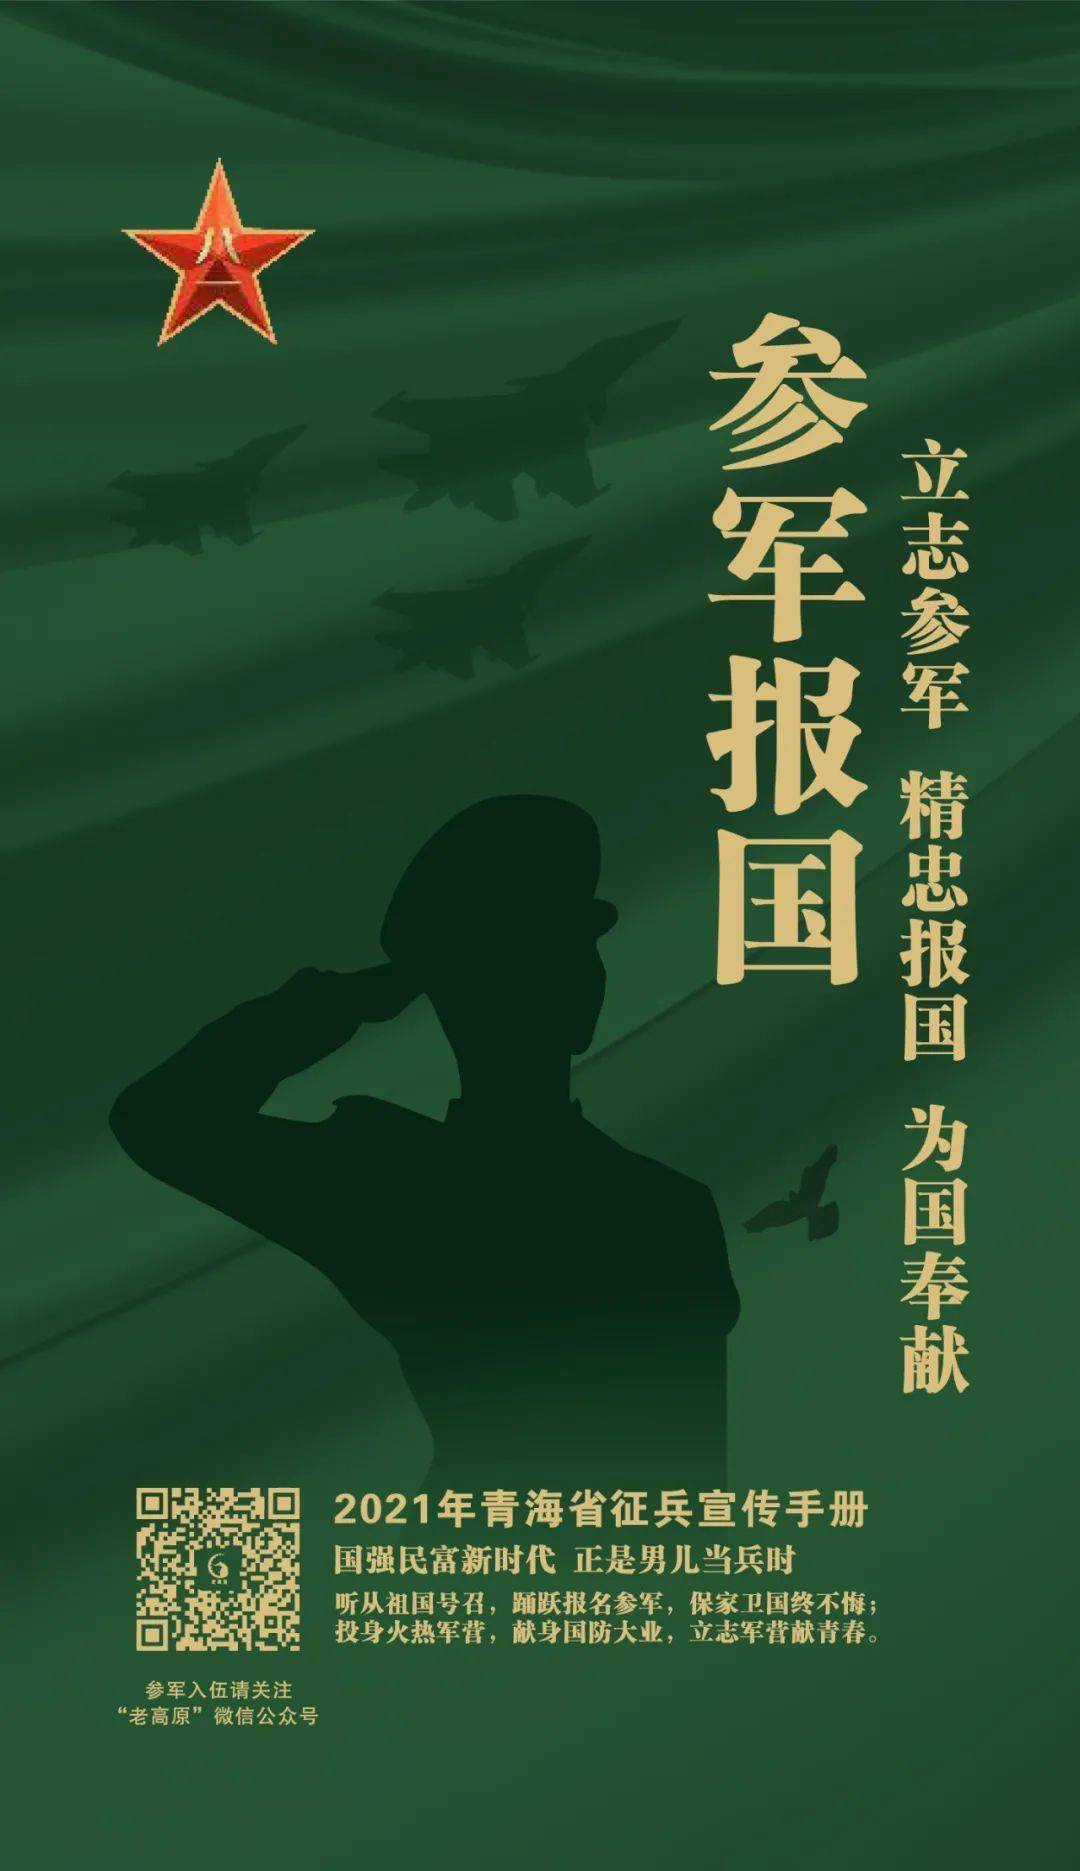 征兵季节请转发2021年青海省征兵宣传手册来了